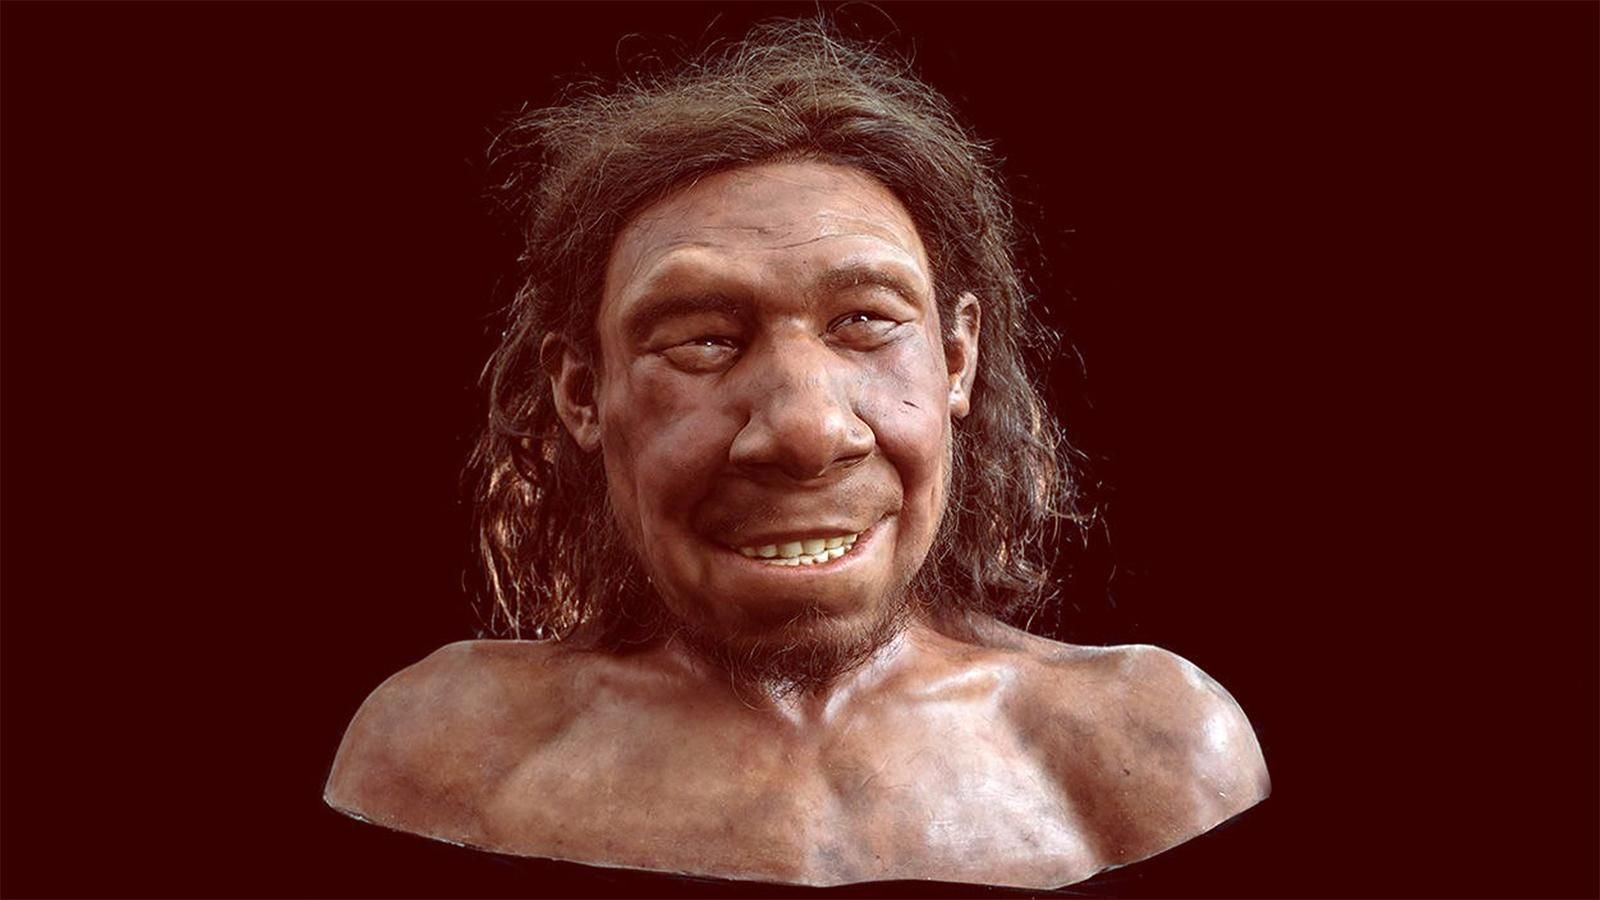 Палеохудожники показали, як виглядав неандерталець, який жив 50 тисяч років тому - Новини технологій - Техно